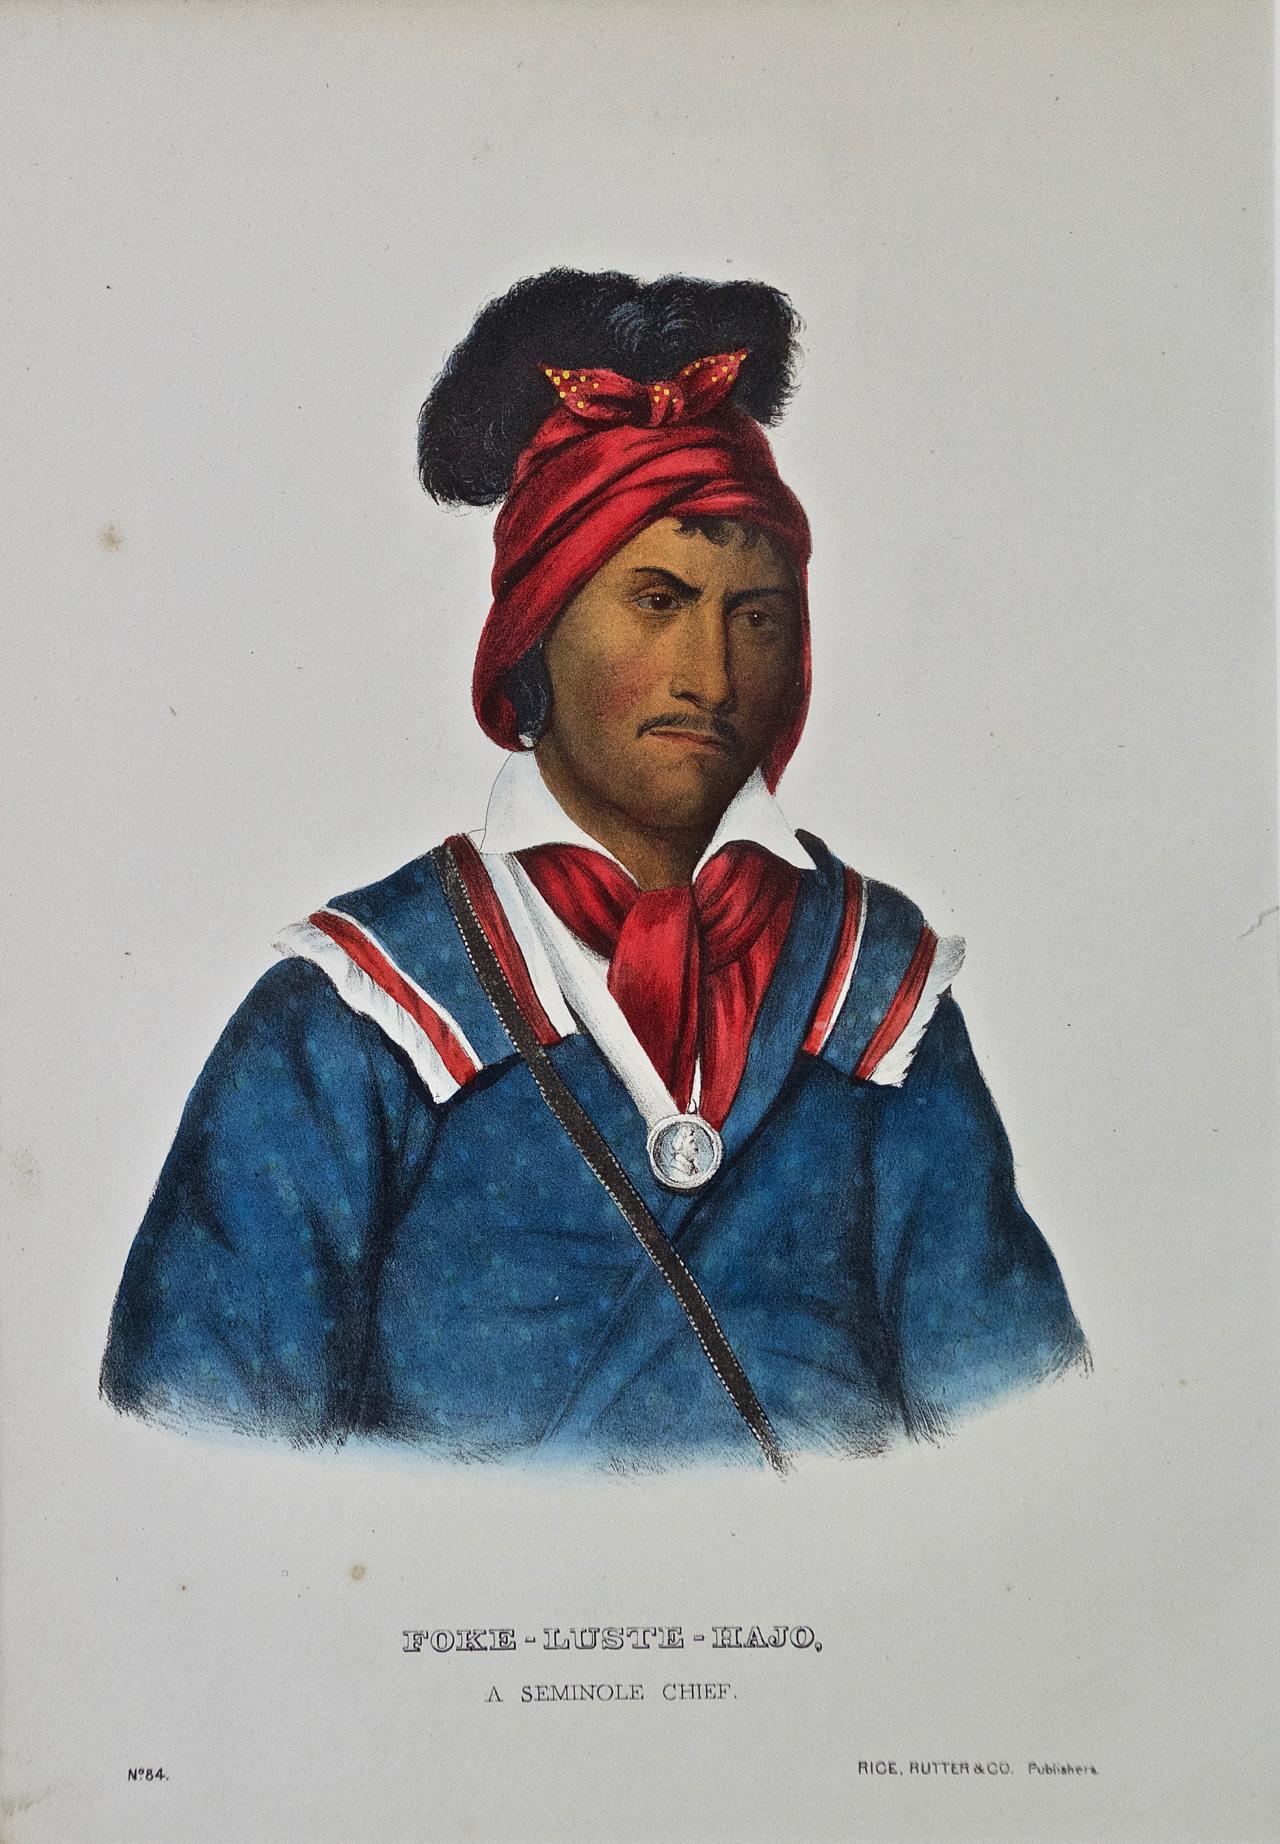 Il s'agit d'une gravure McKenney et Hall originale du 19e siècle, coloriée à la main, représentant un Amérindien et intitulée "Foke-Luste-Hajo, A Seminole Chief, No. 84", publiée par Rice, Rutter & Co. en 1865.

Cette gravure originale de McKenney